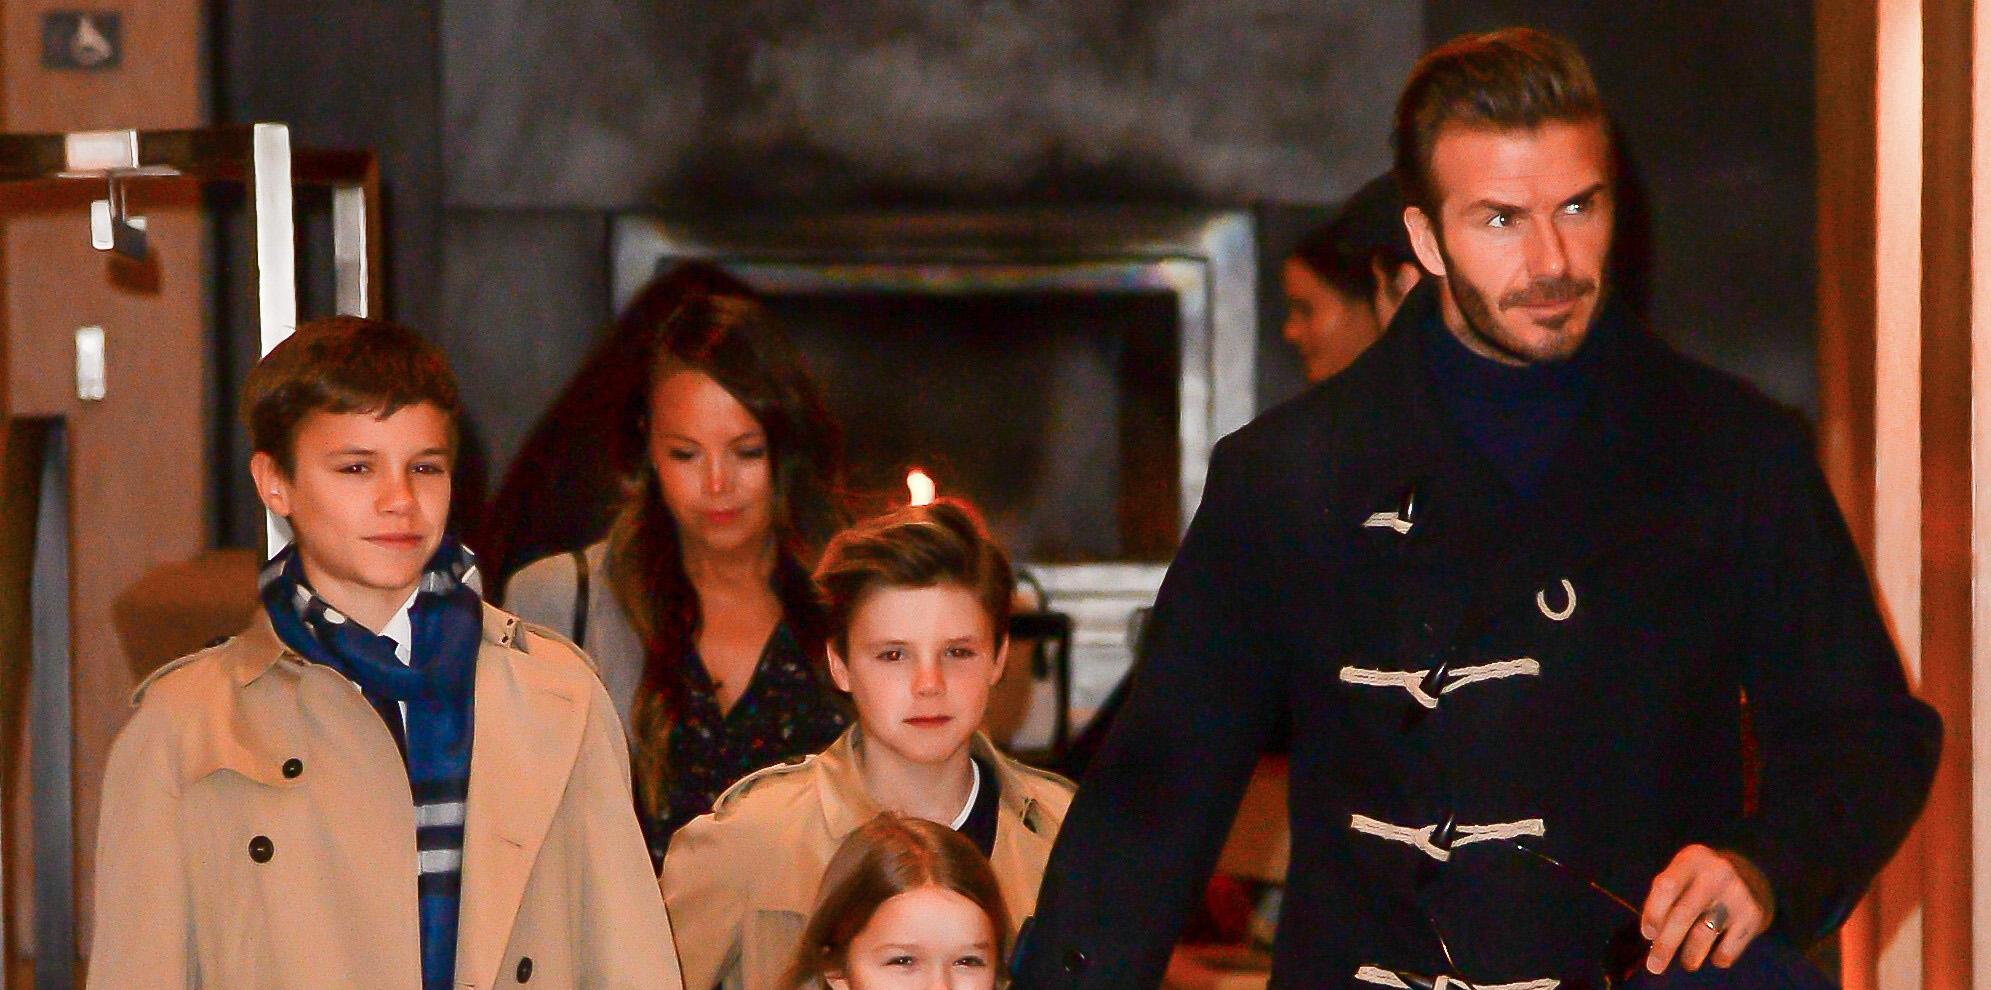 Family Reunion! David Beckham Takes His Kids To Victoria's NYFW Show